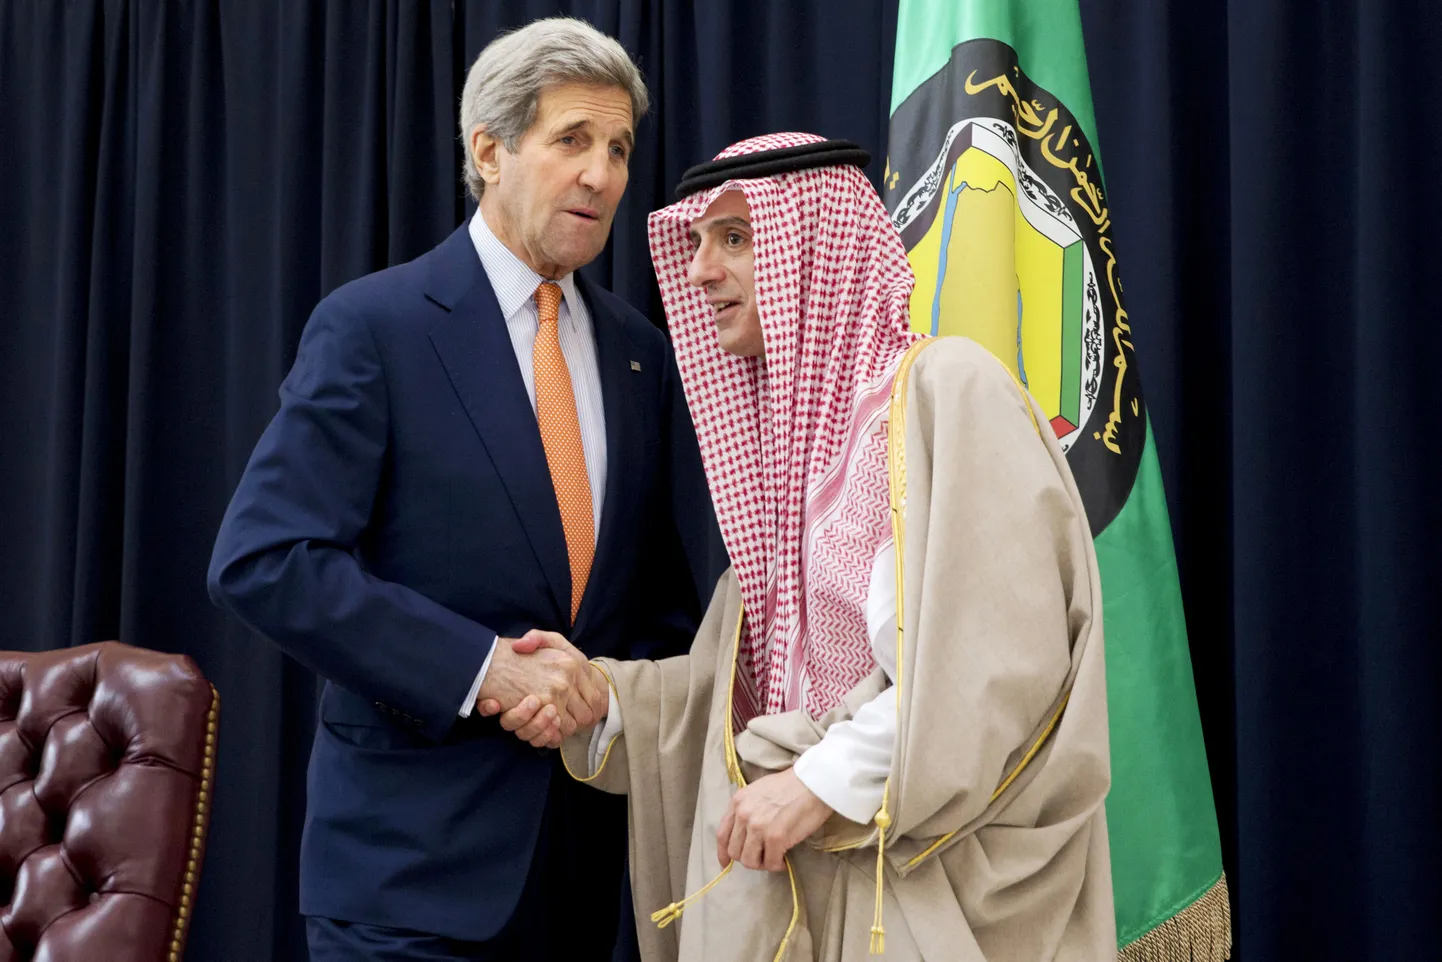 Ameerika Ühendriikide välisminister John Kerry (vasakul) ja Saudi Araabia välisminister Adel al-Jubeir.